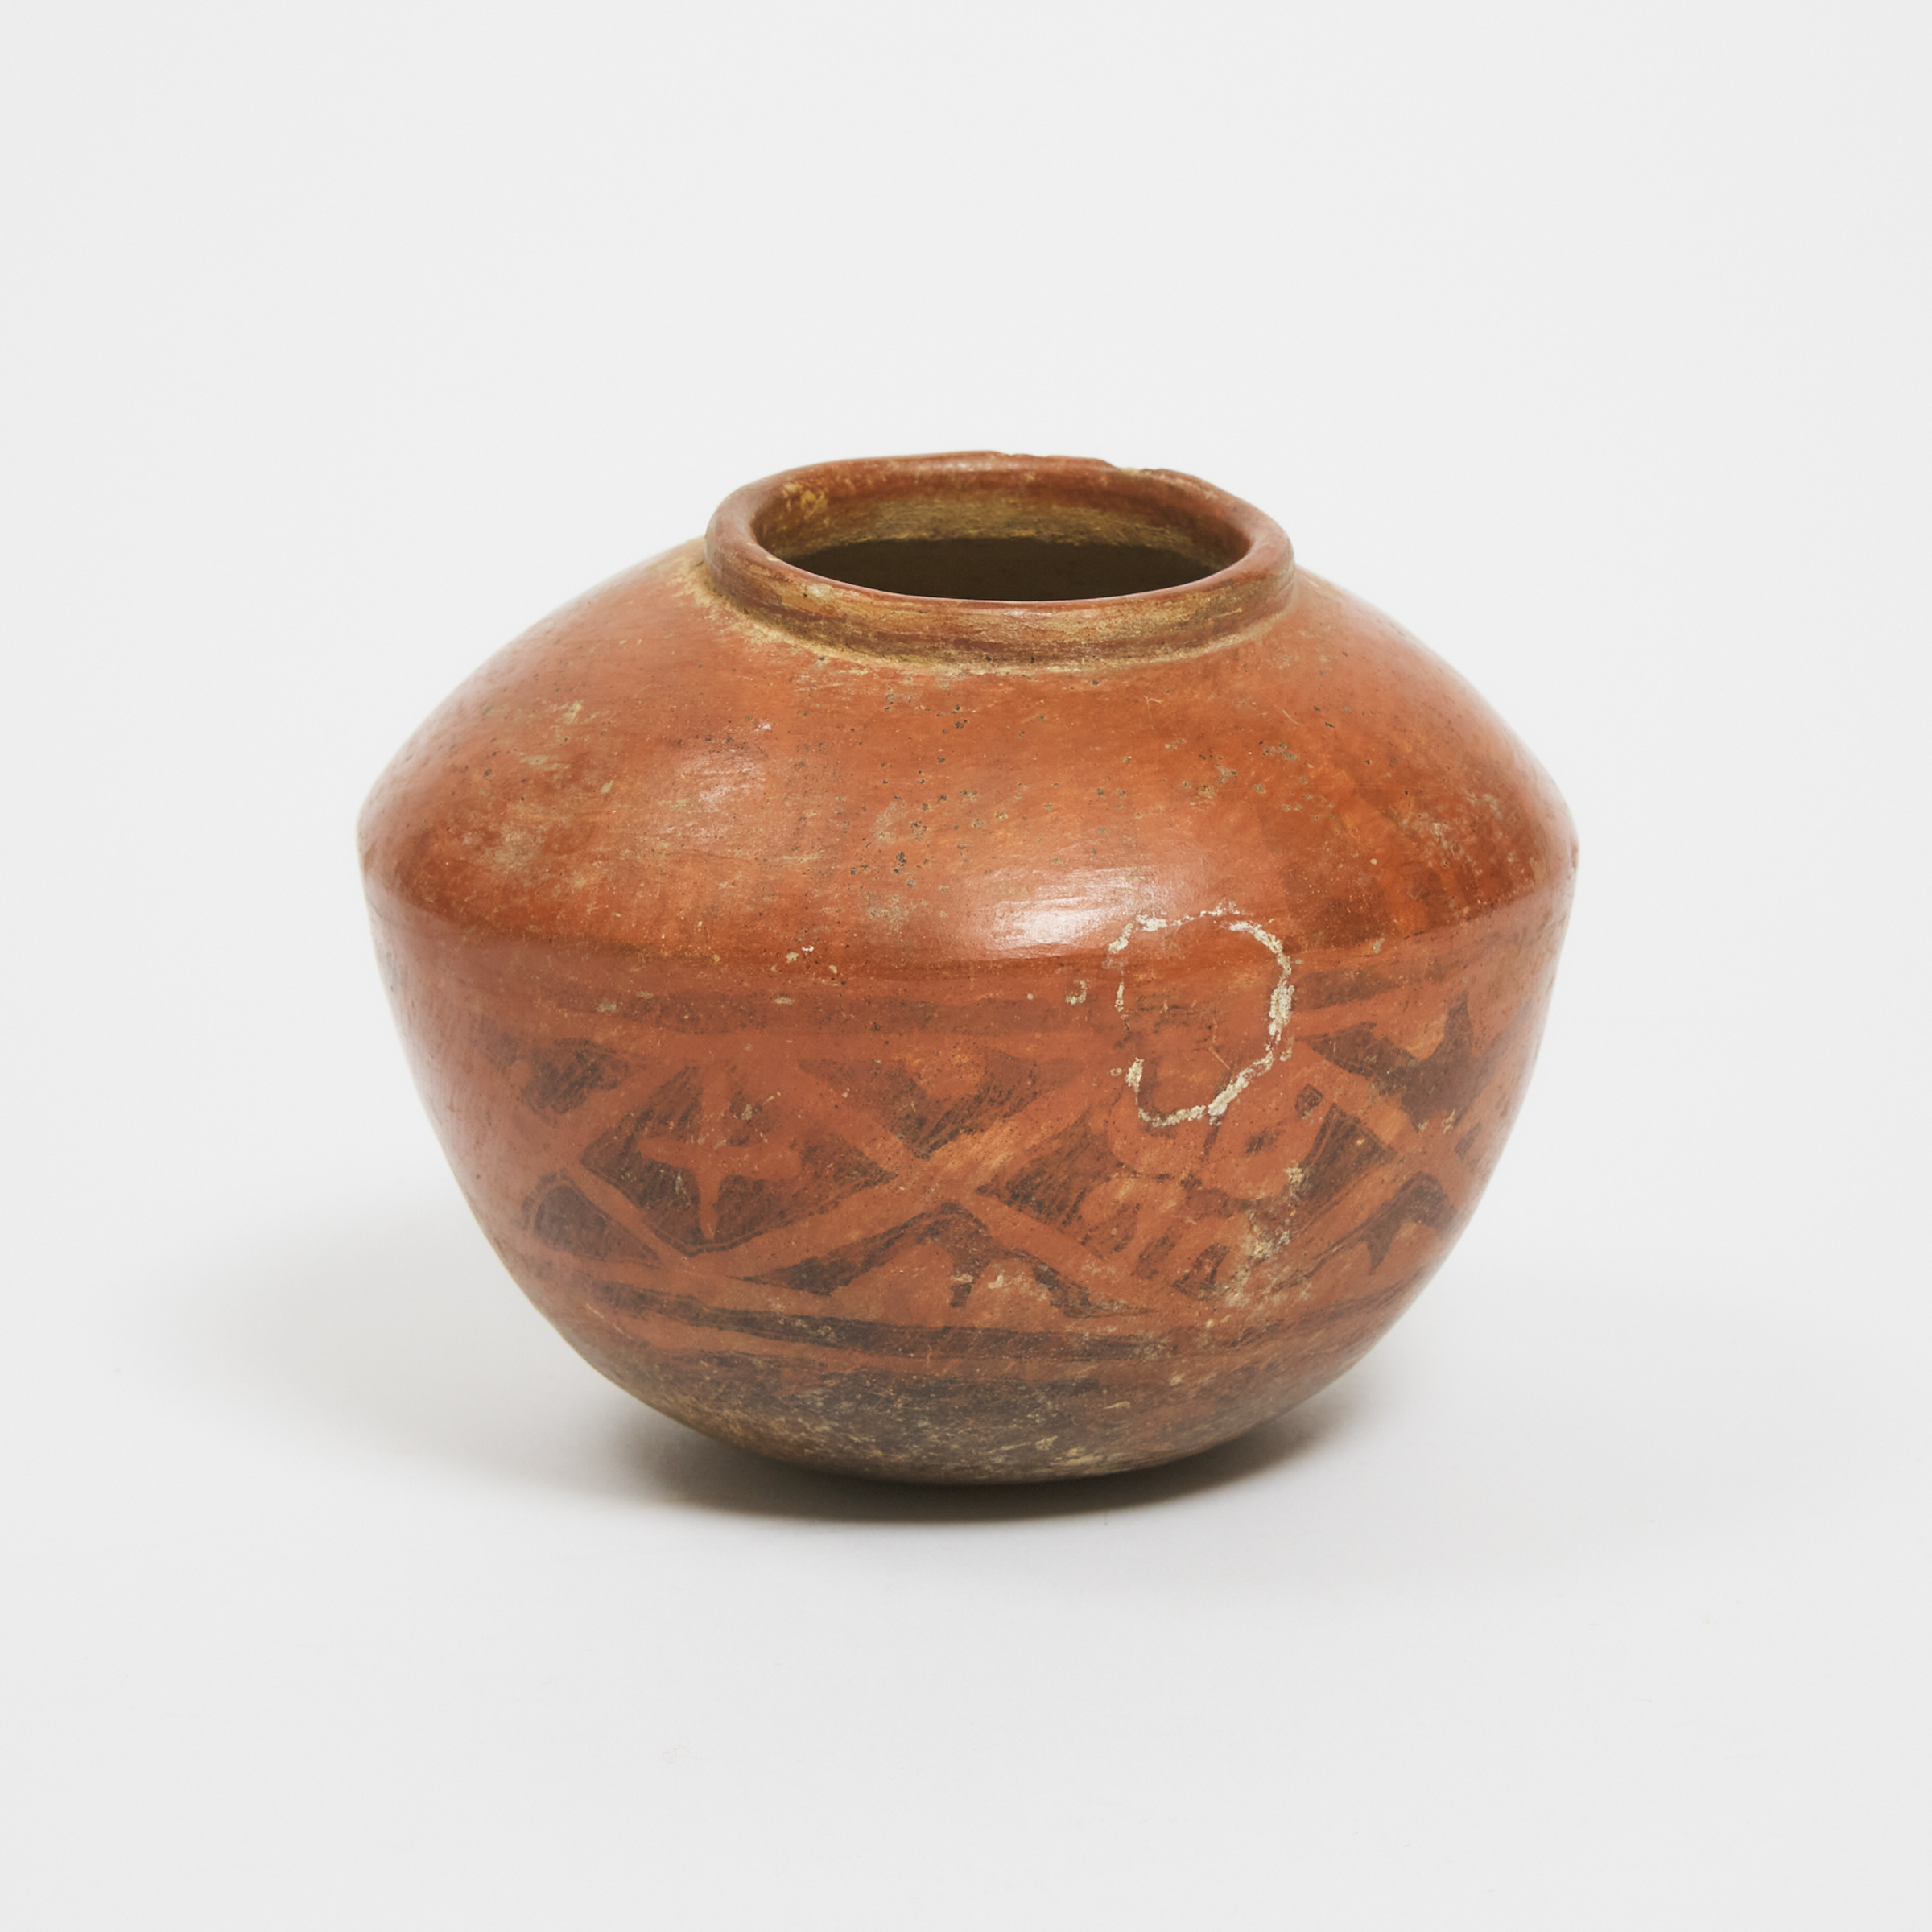 Narino Red Slip Pottery Jar, 850-1500